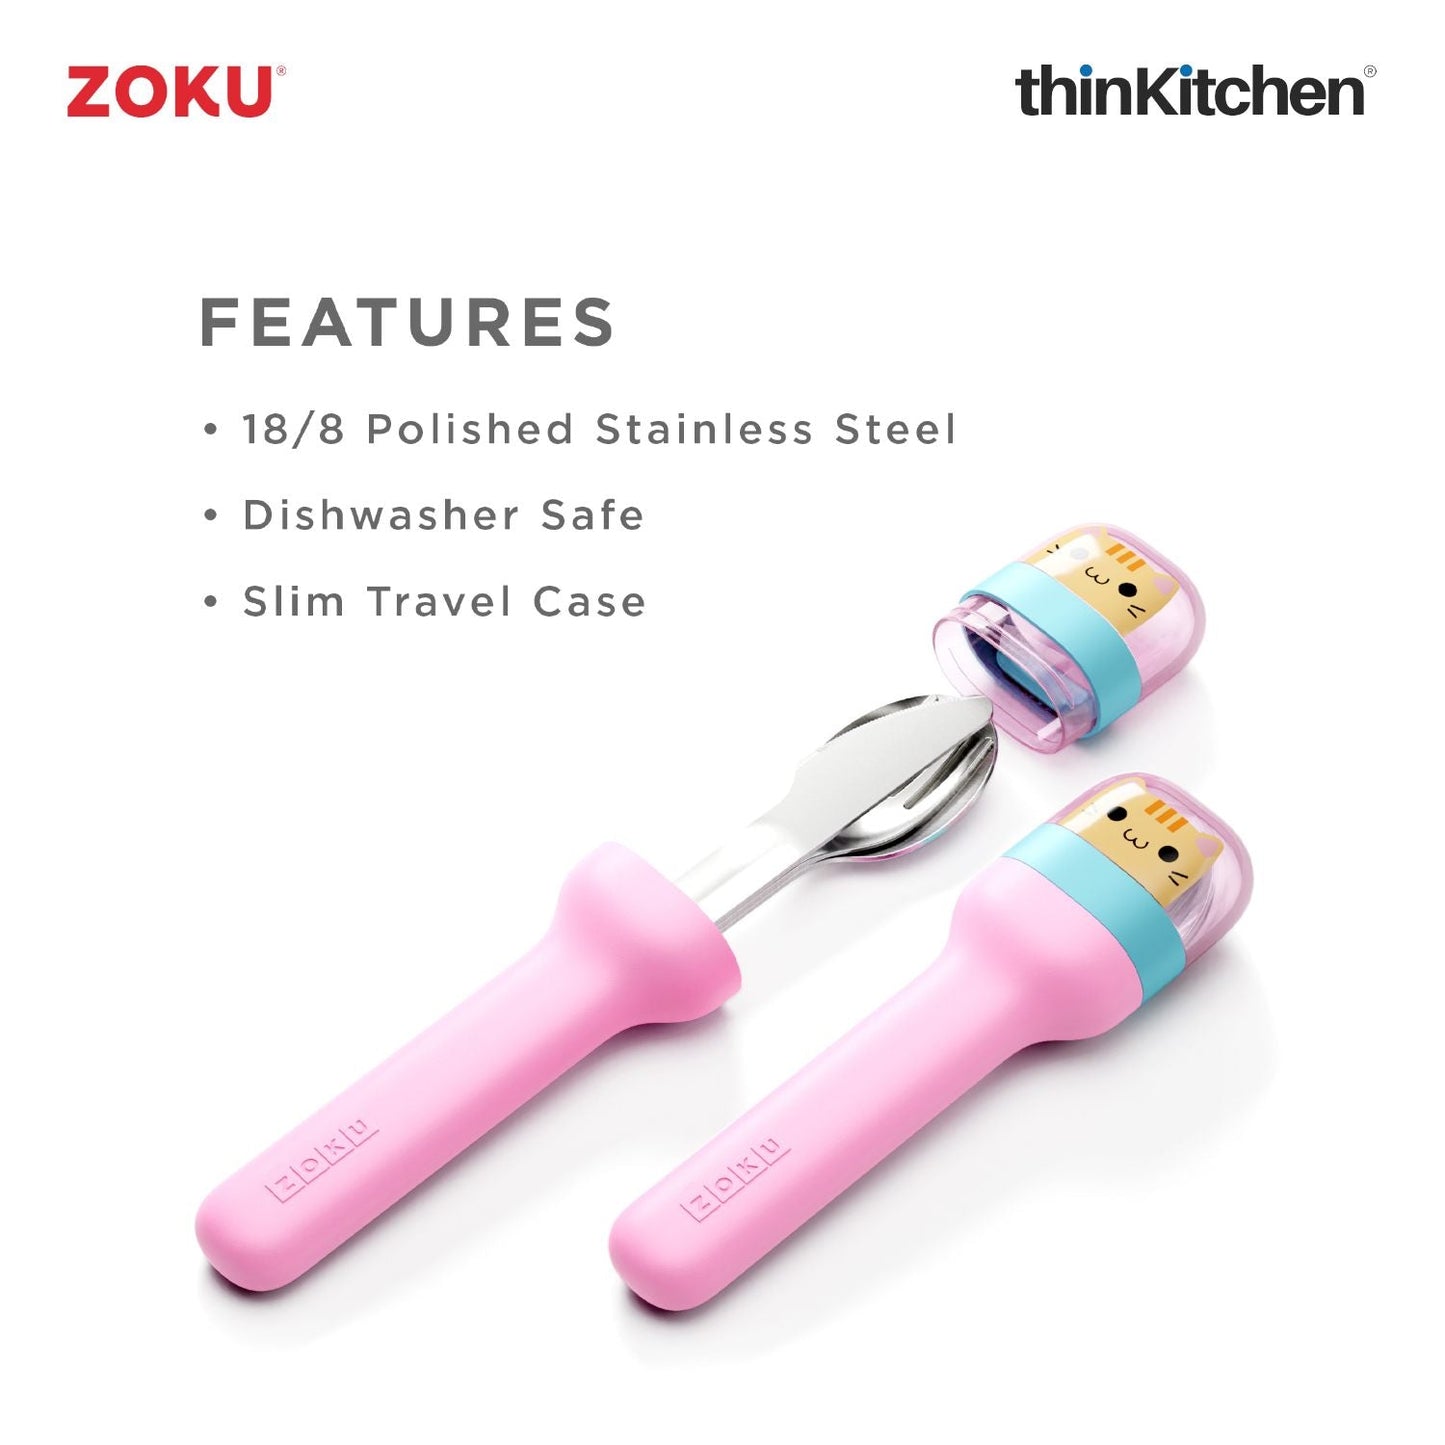 thinKitchen™ Zoku Stainless Steel Kids Pocket Utensil Set, Kitty